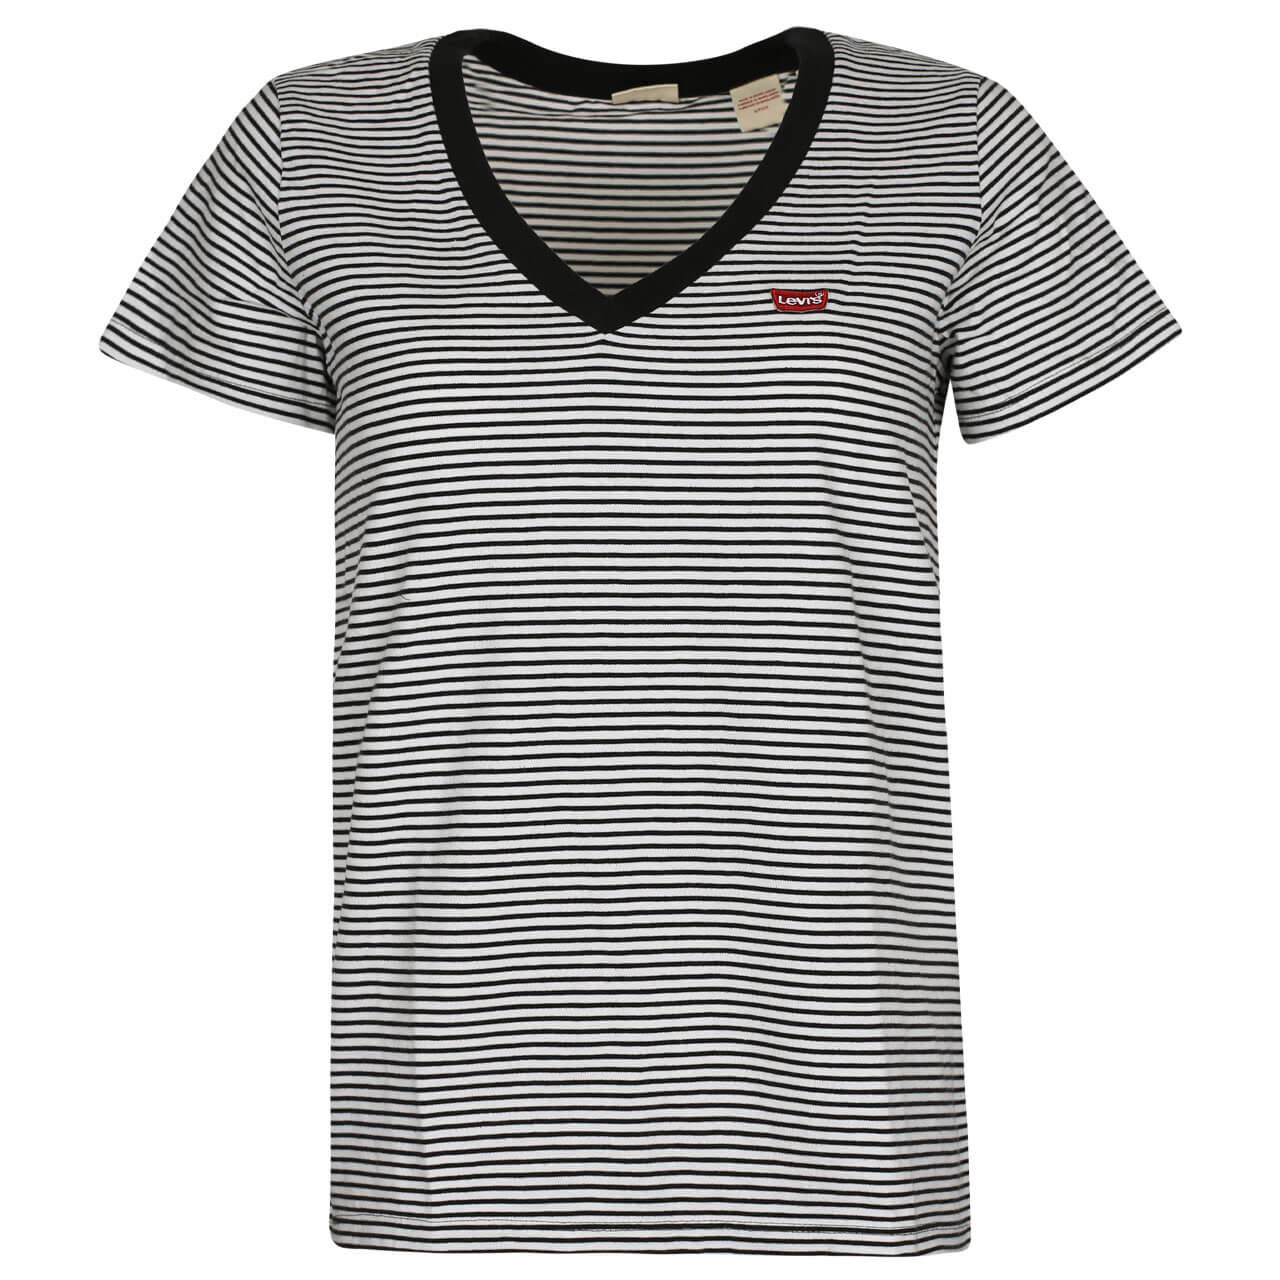 Levis T-Shirt für Damen in Weiß gestreift, FarbNr.: 0004